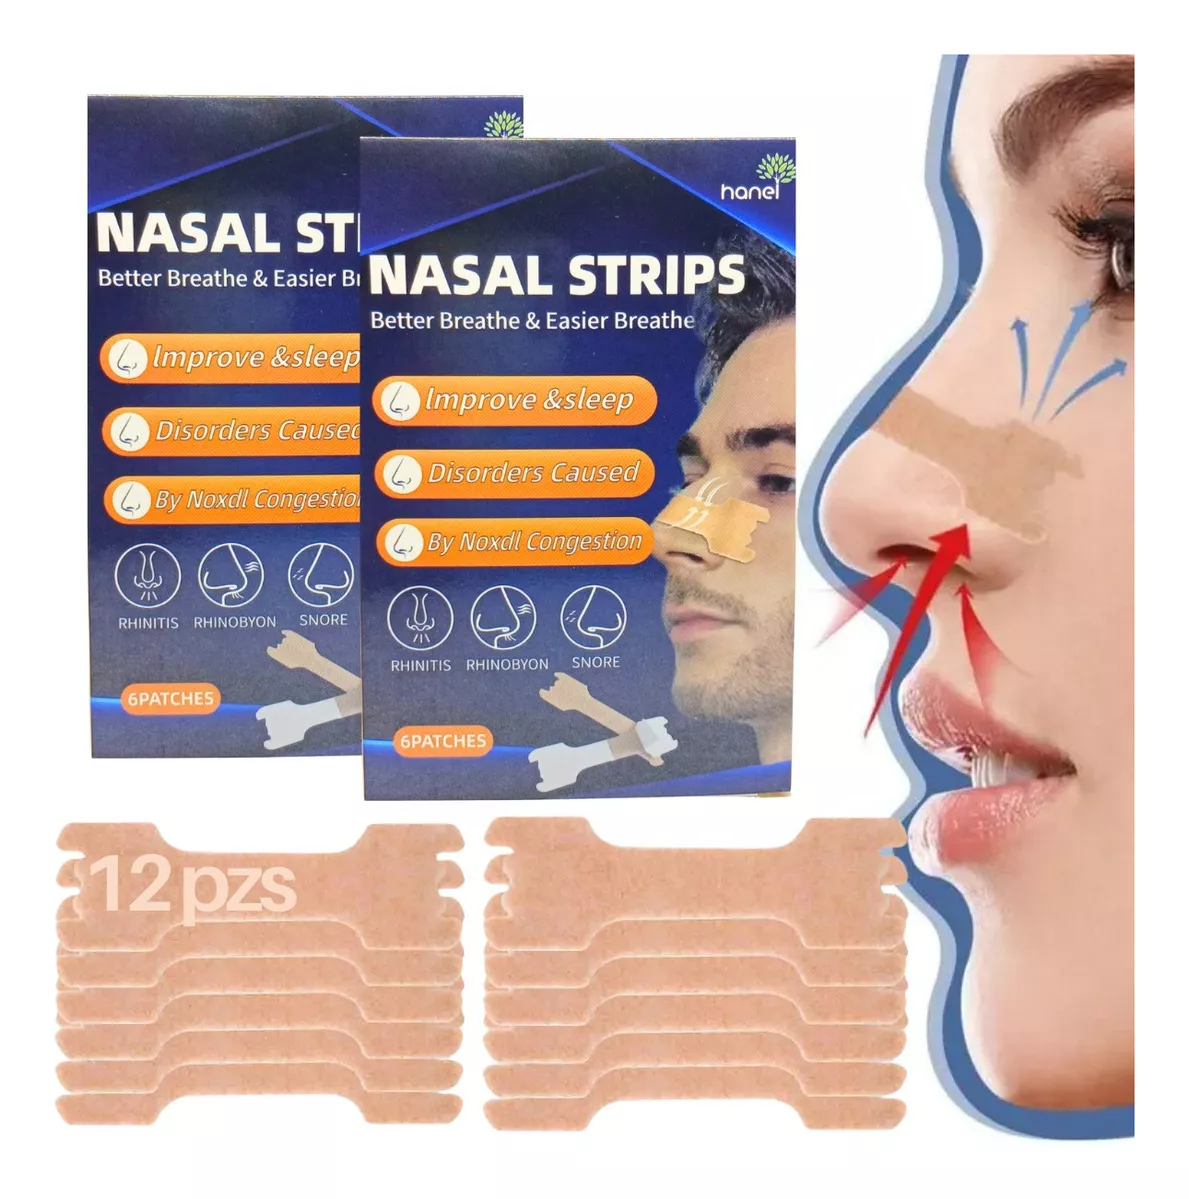 Primera imagen para búsqueda de tiras nasales